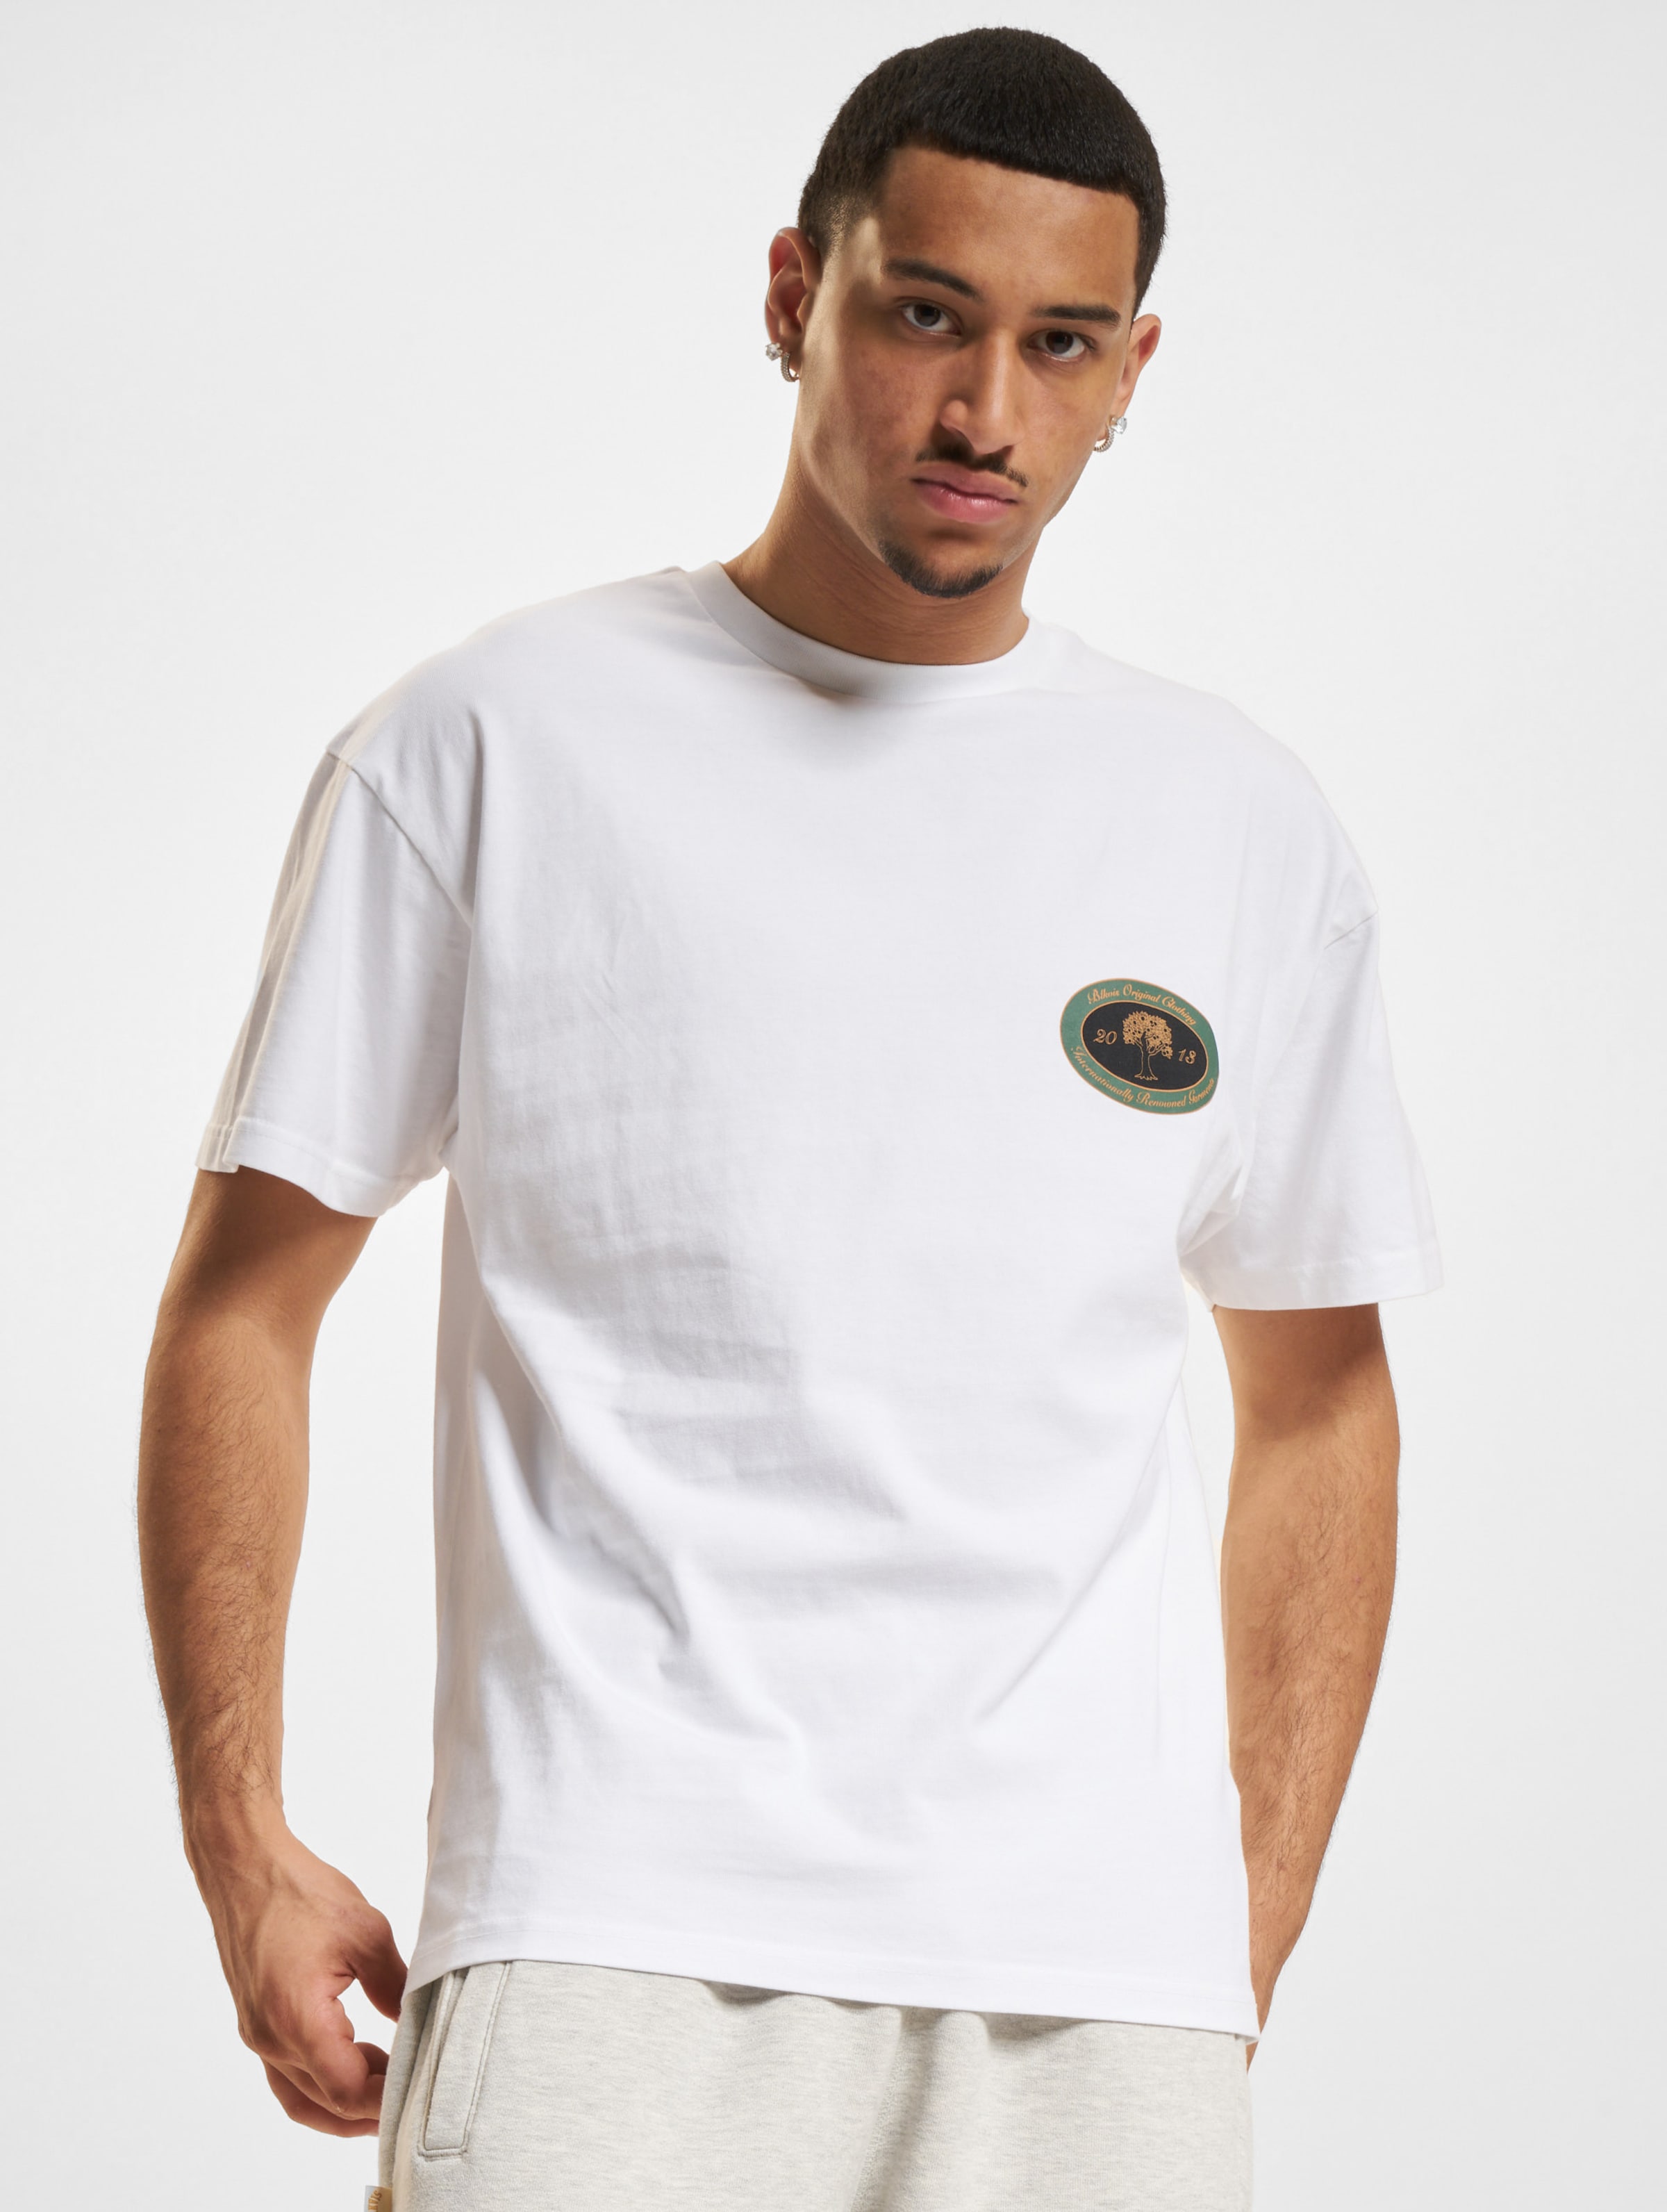 BLKVIS B.O.C. T-Shirt Männer,Unisex op kleur wit, Maat M